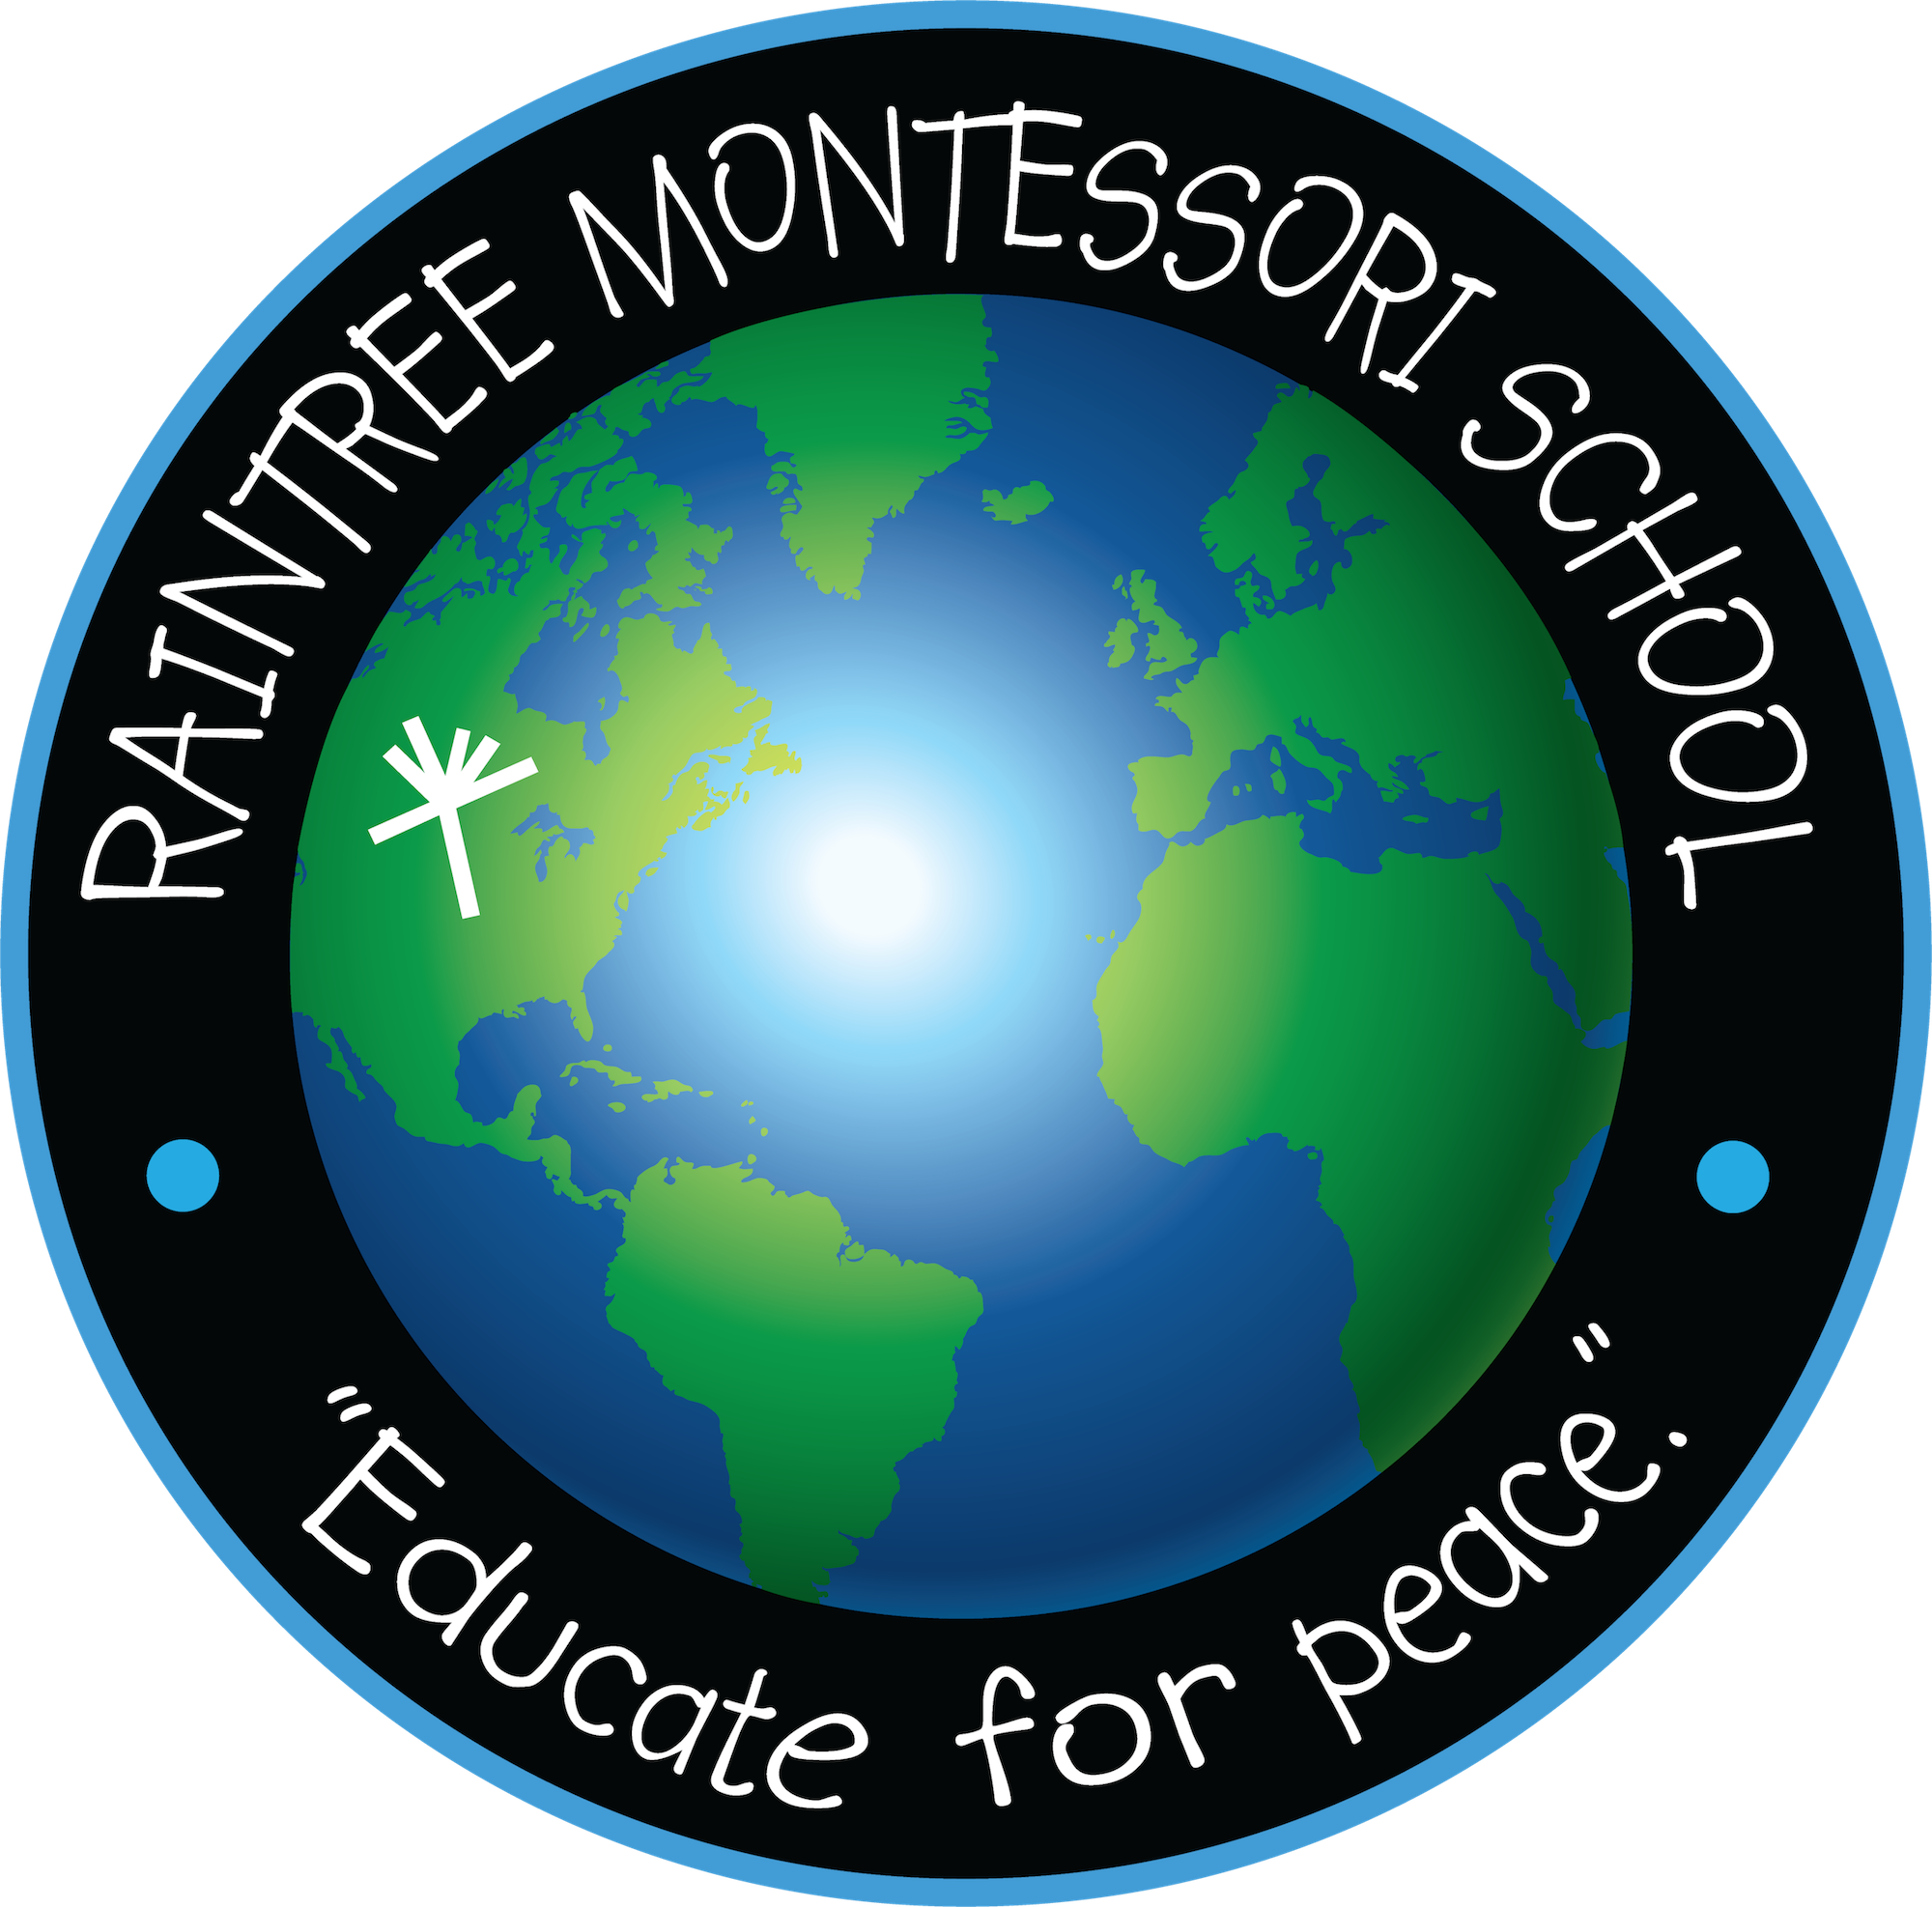 Search - Raintree Montessori School (2000x1974)